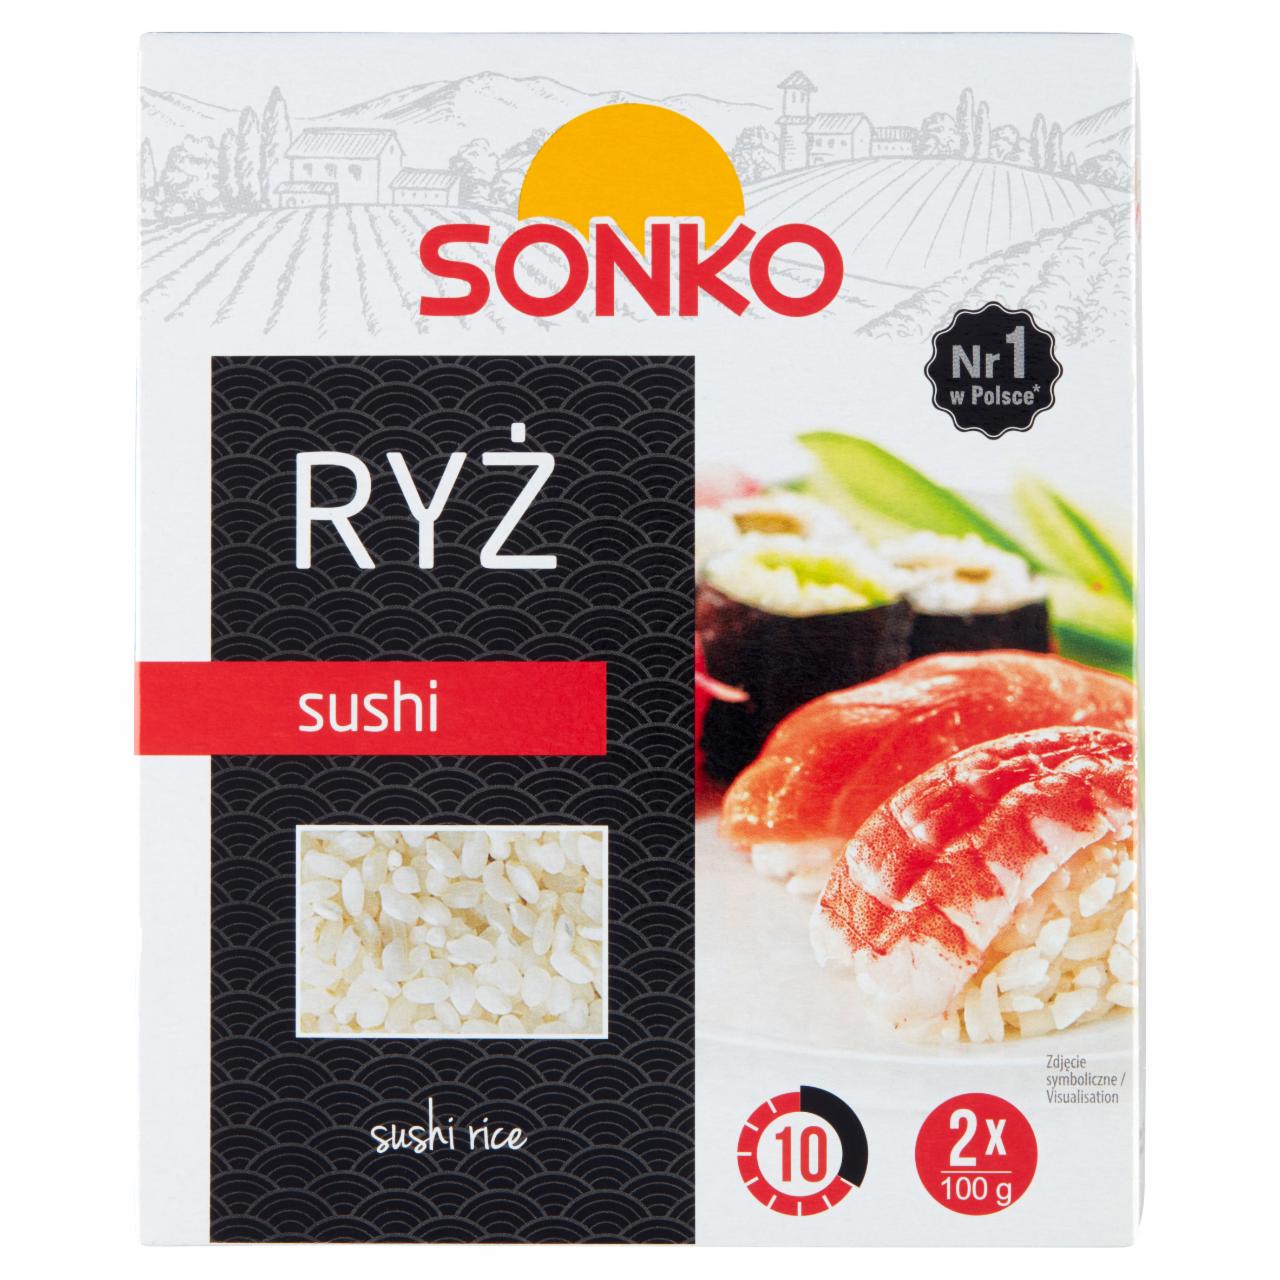 Zdjęcia - Sonko Ryż sushi 200 g (2 x 100 g)